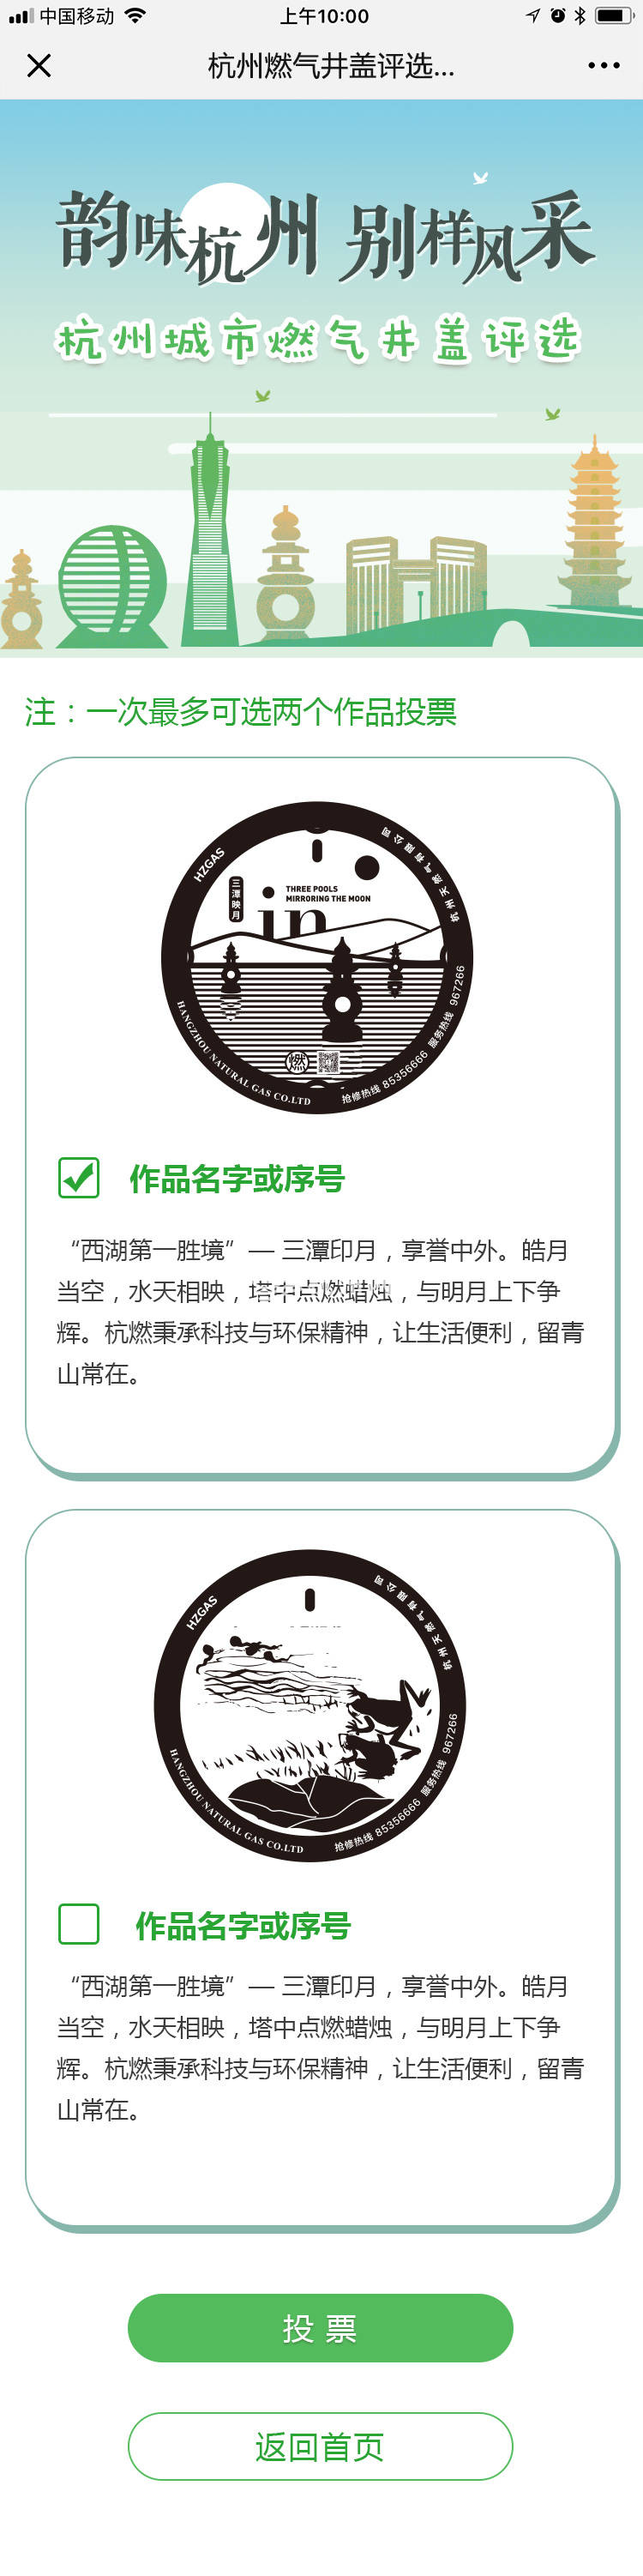 杭州燃气井盖评选活动页面设计(06)